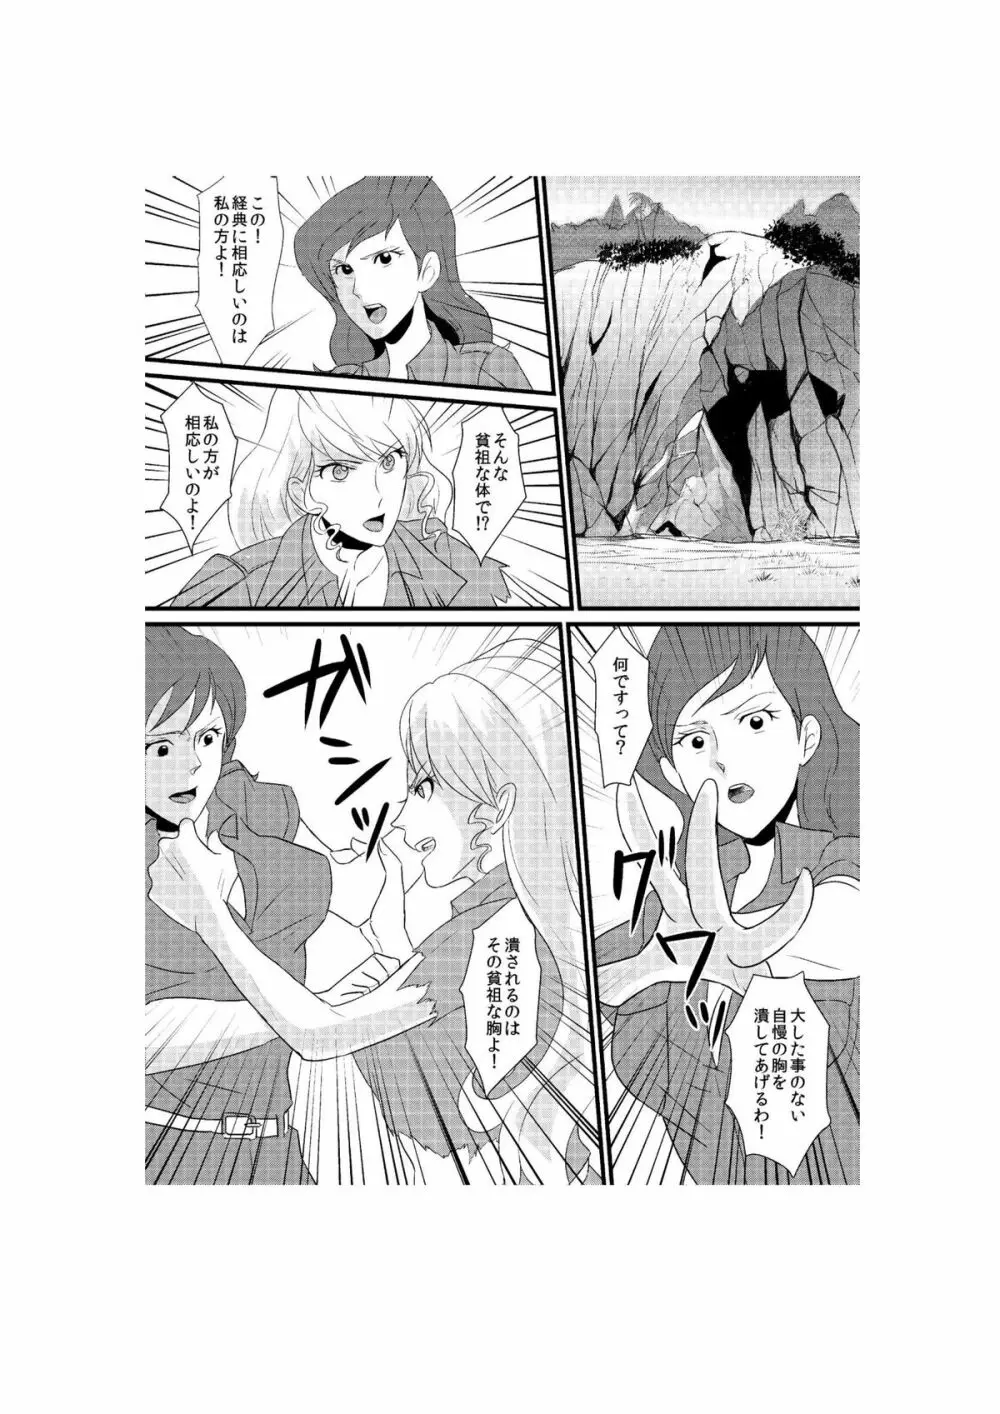 Fushi no Kyouten Ureta Onna no Tatakai - Fujiko VS Emmanuelle - page1